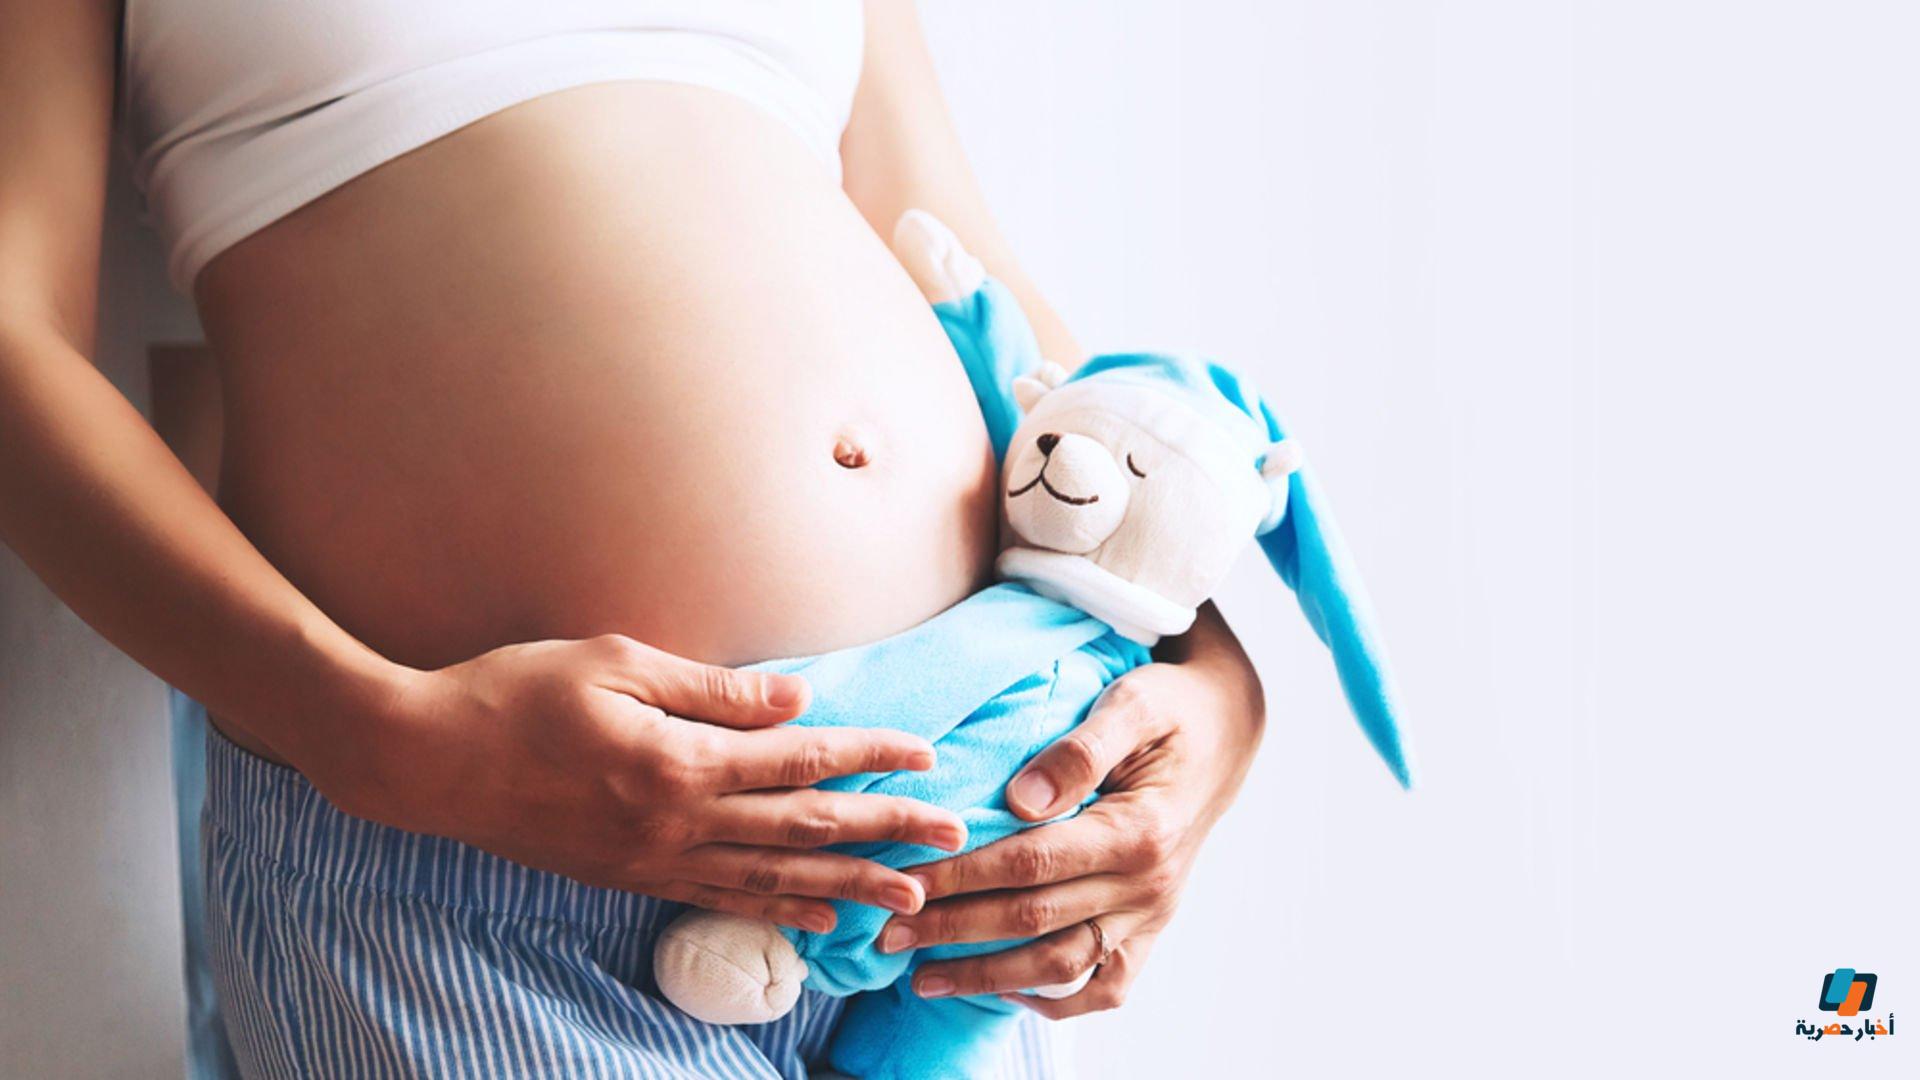 أعراض الحمل في الشهر الرابع بولد عن تجربة أكيدة وموعد بداية حركة الجنين